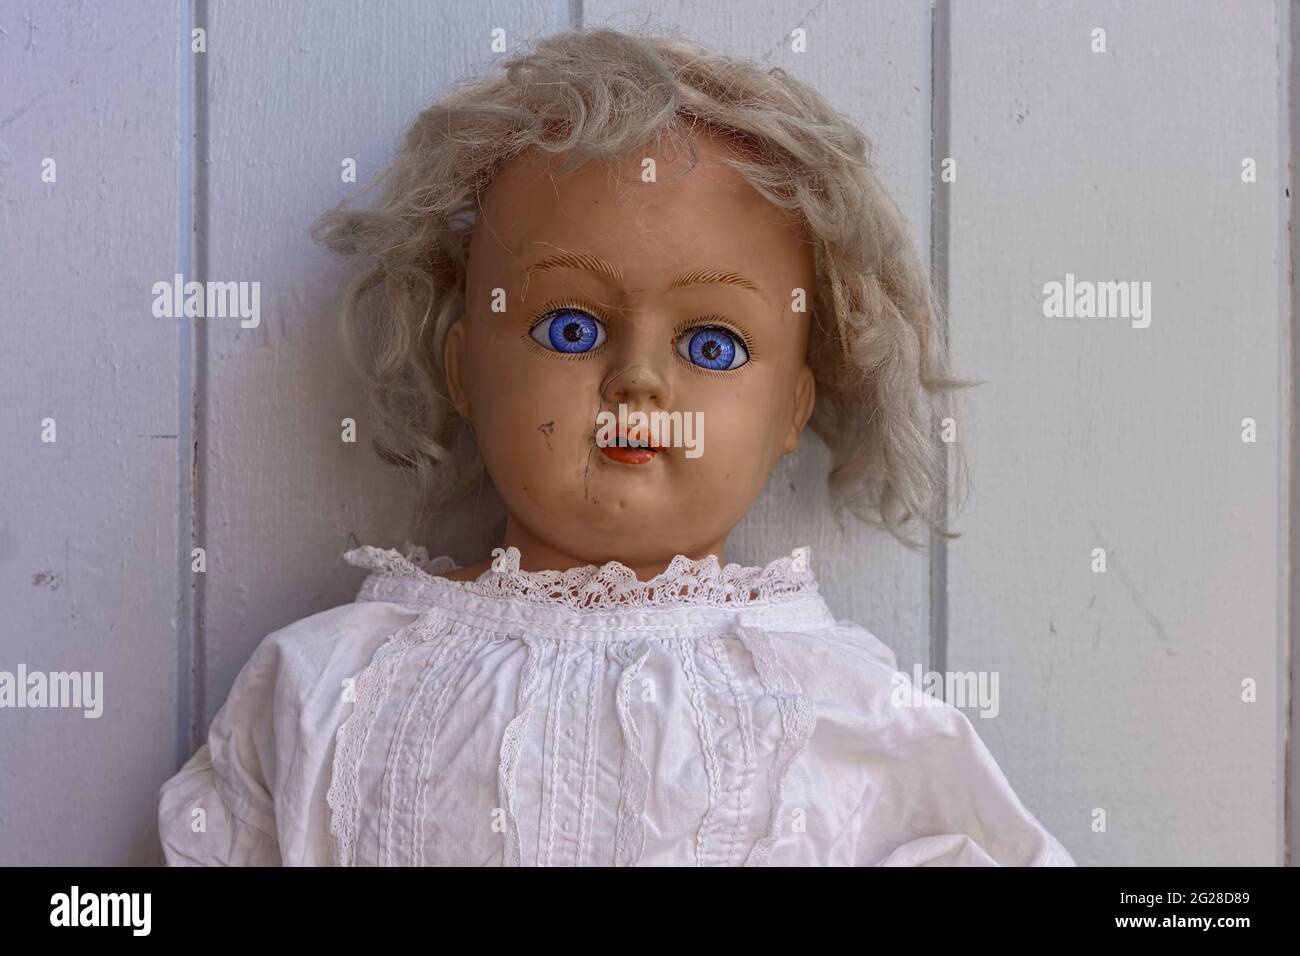 Créepy effrayant vieille poupée antique avec les yeux bleus et la cicatrice et avec les cheveux blonds salissants pour halloween Banque D'Images